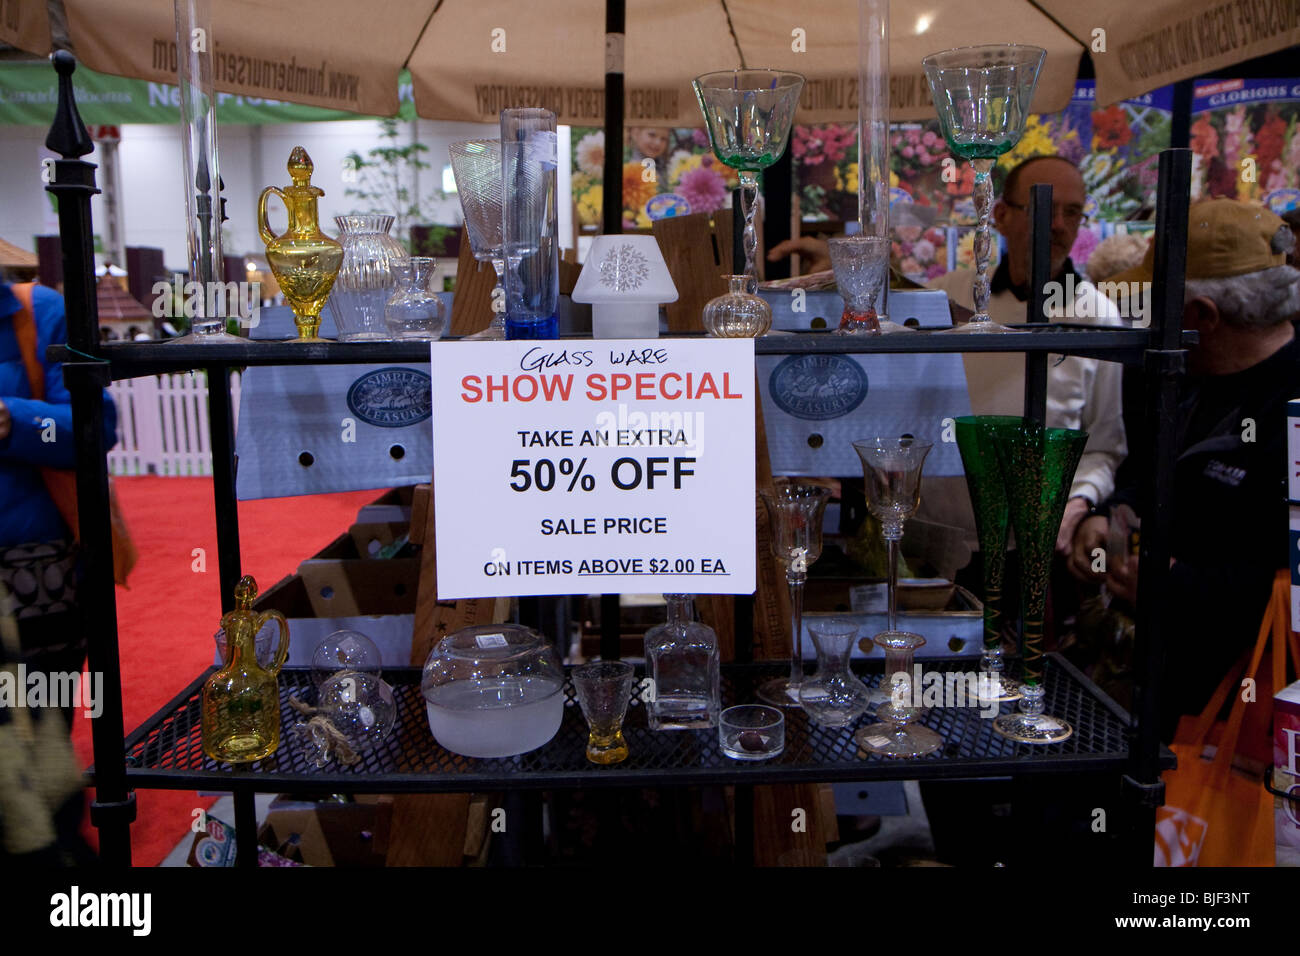 Mostrar signo especial 50% de descuento en la venta de vasos y jarrones Foto de stock